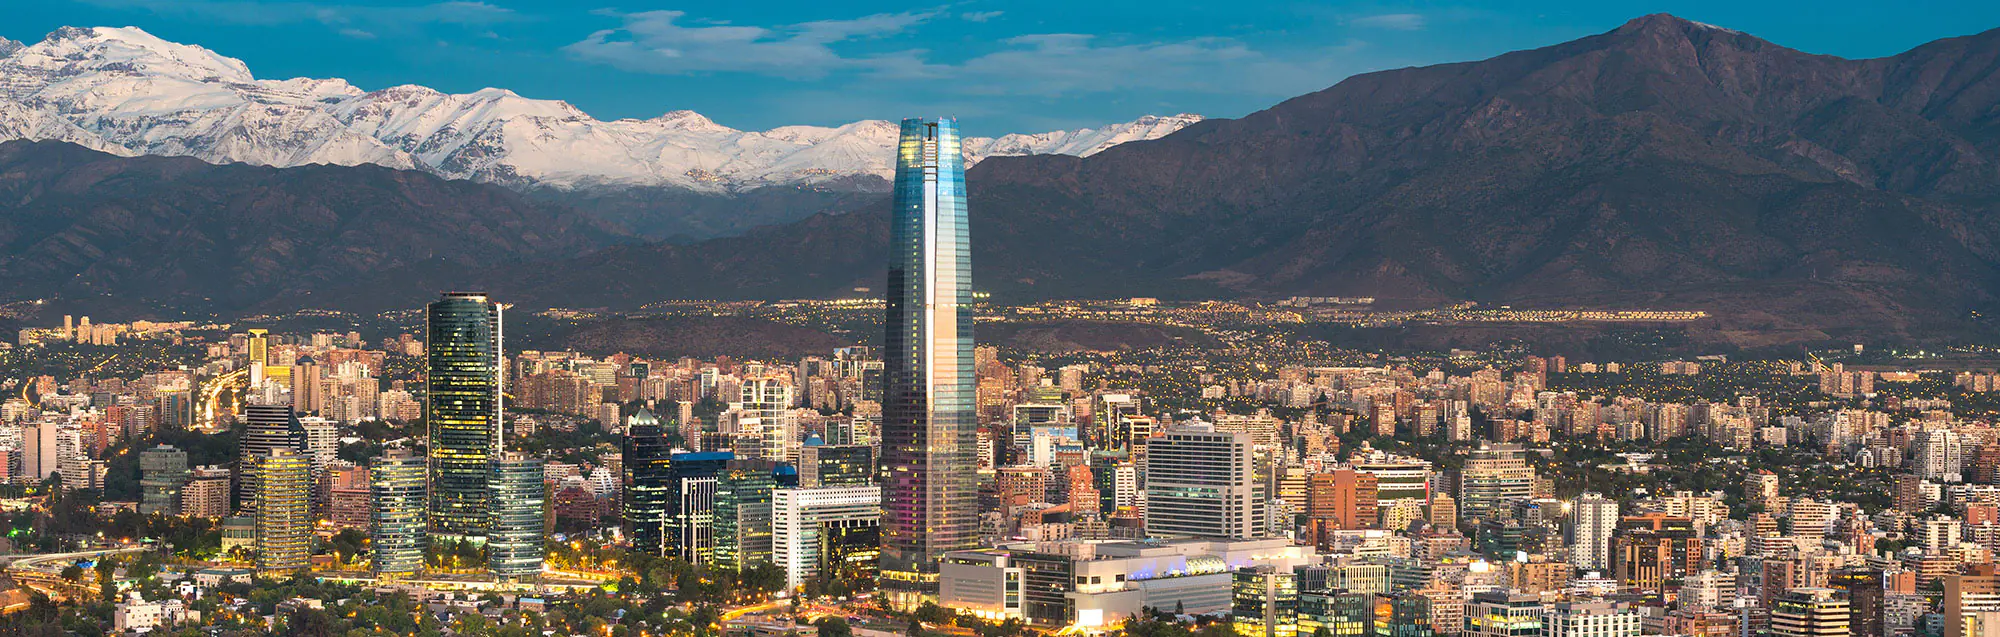 Escuelas de español para adultos, niños y adolescentes en Santiago de Chile